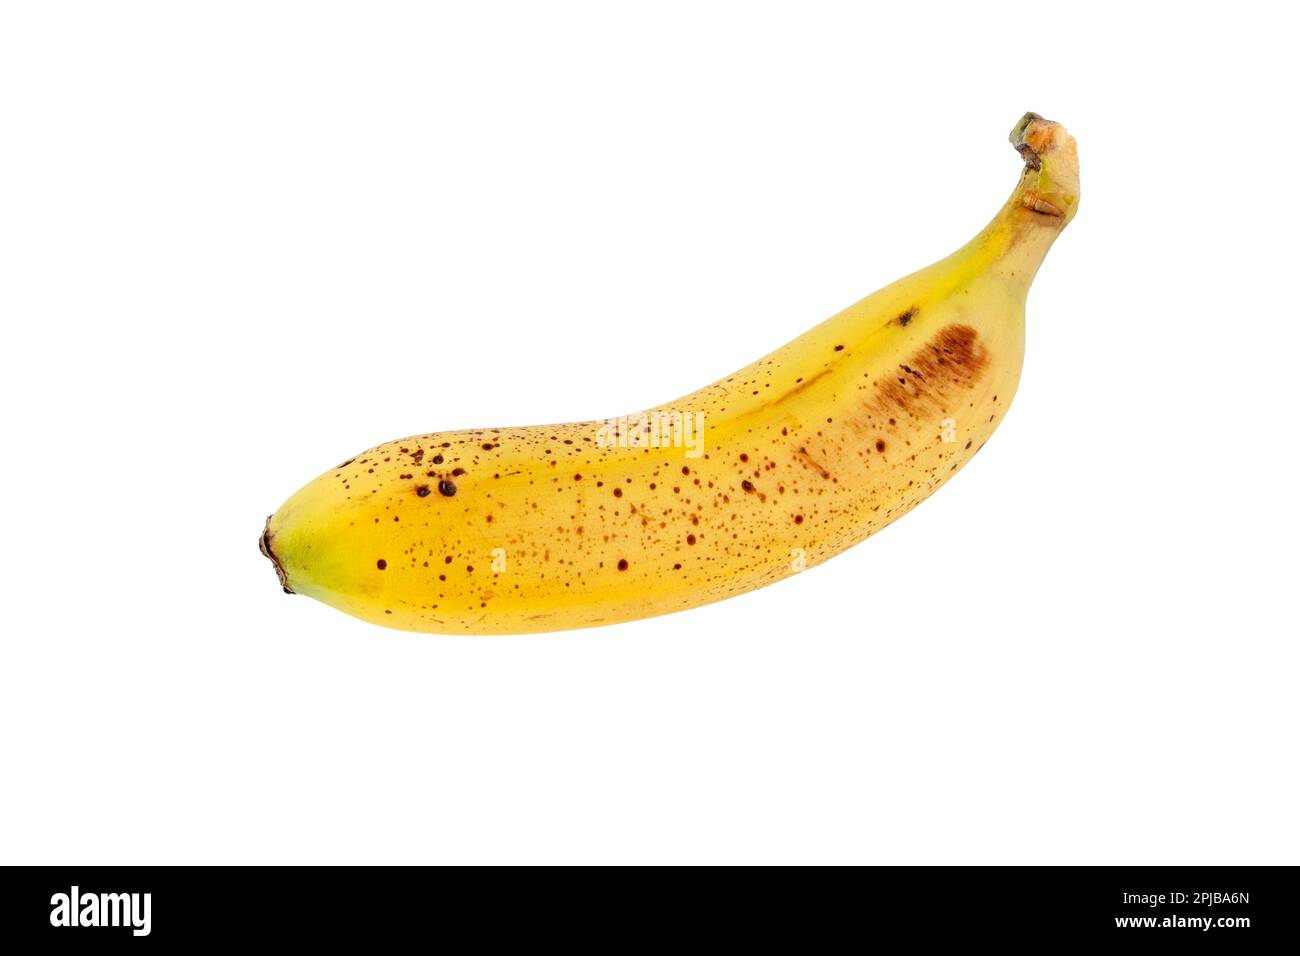 Orphan-Banane mit auf weiß isolierten Zuckerflecken. Reife, gelb gefleckte Früchte. Cavendische Sorte von Musa acuminata. Stockfoto